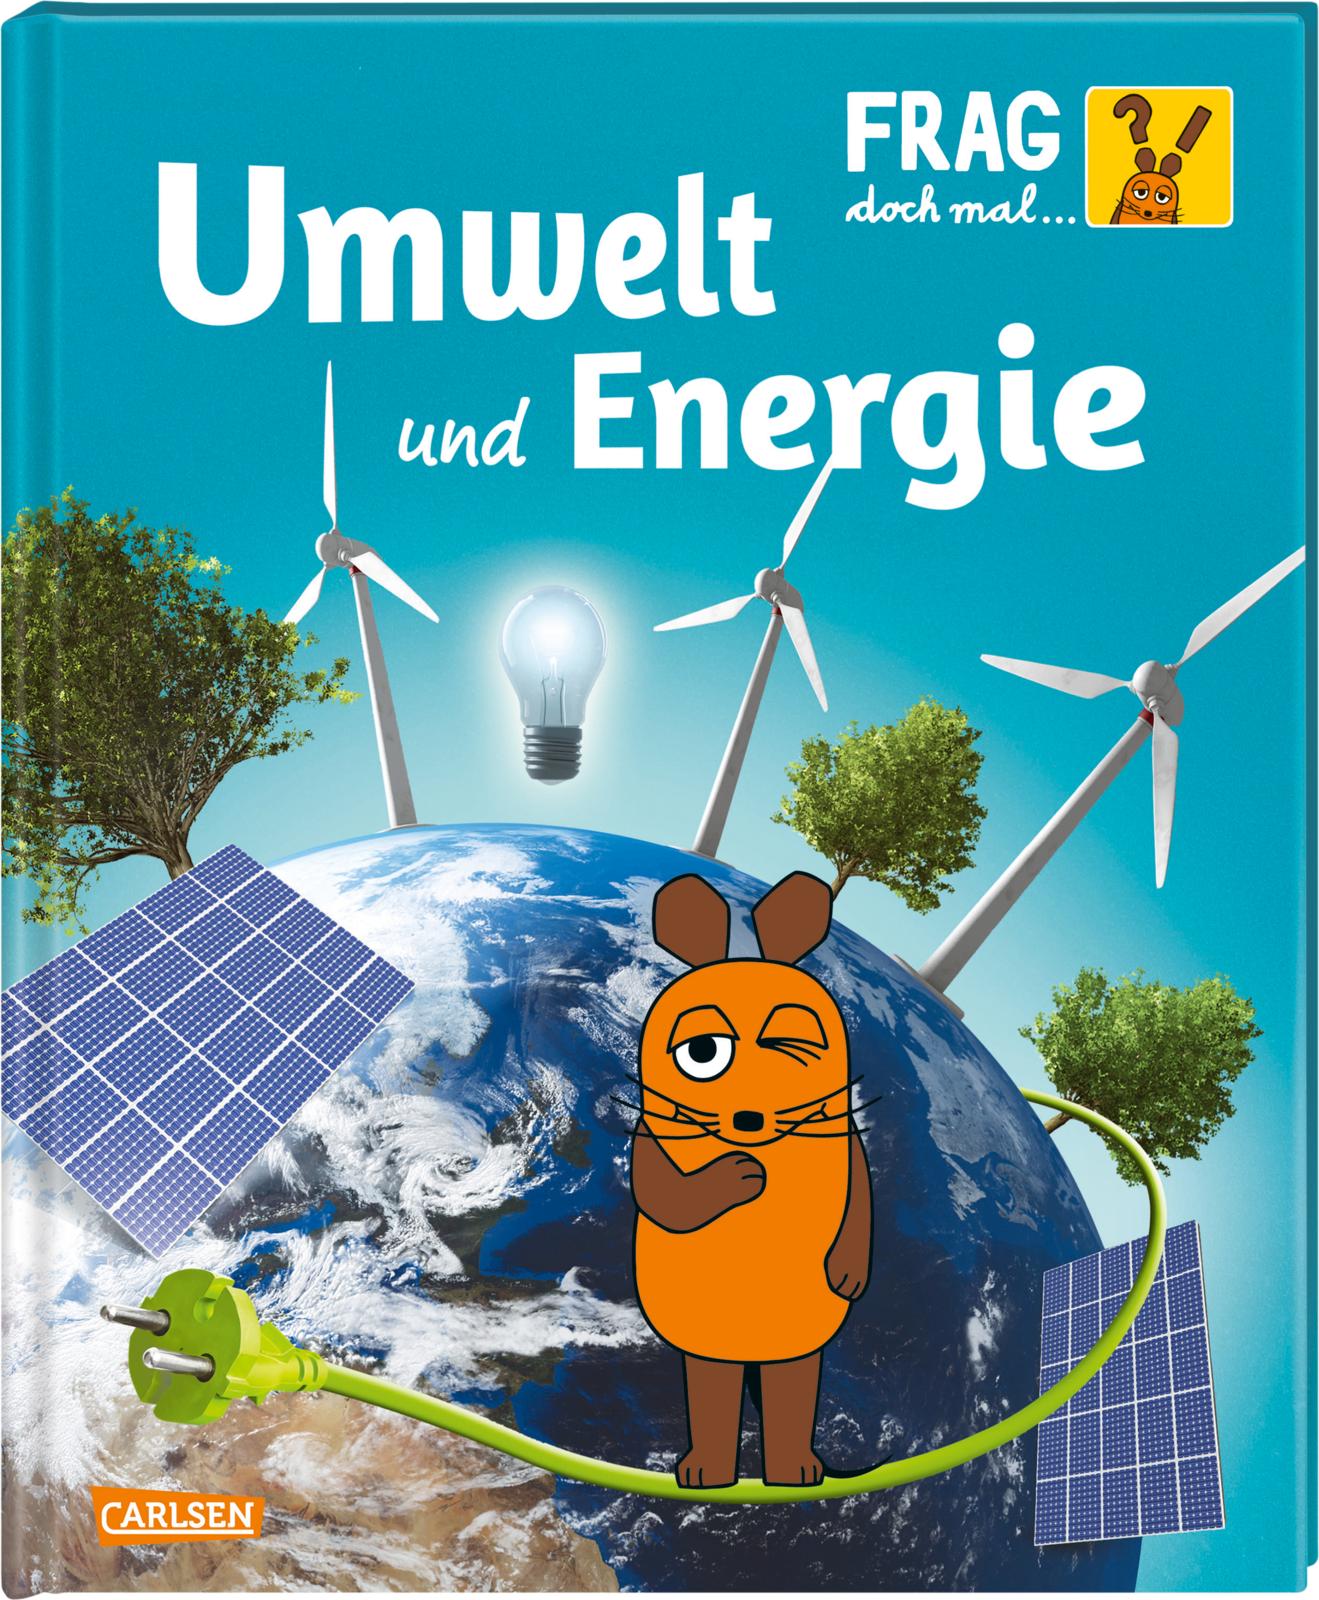 Gabi Neumayer und Igor DolingerFrag doch mal … die Maus!: Umwelt und Energie